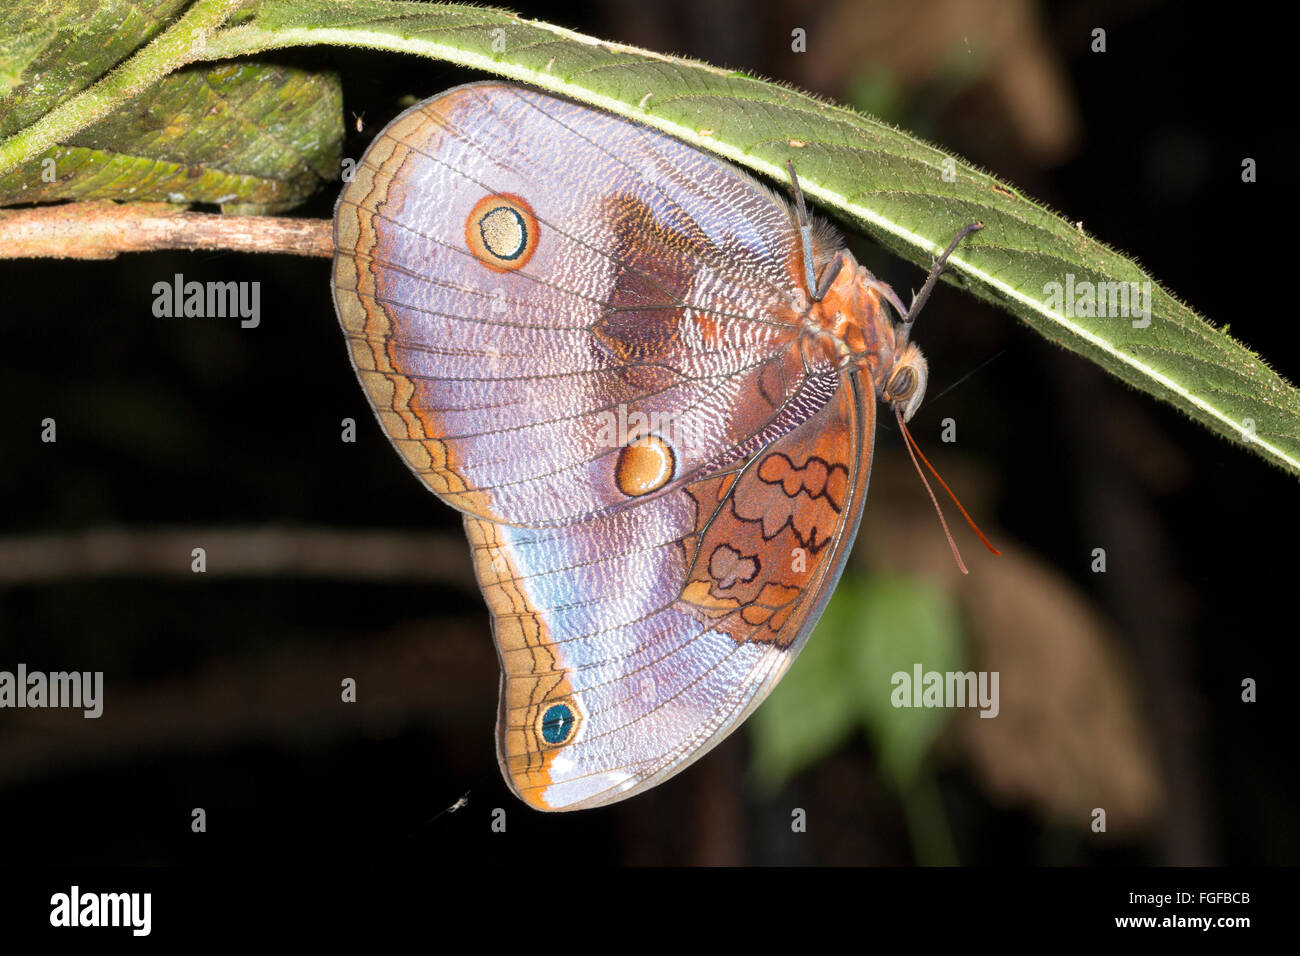 Mariposa, Catoblepia xanthocles, familia Brassolidae posados boca abajo en el sotobosque de la selva en la noche en el Ecuador Foto de stock